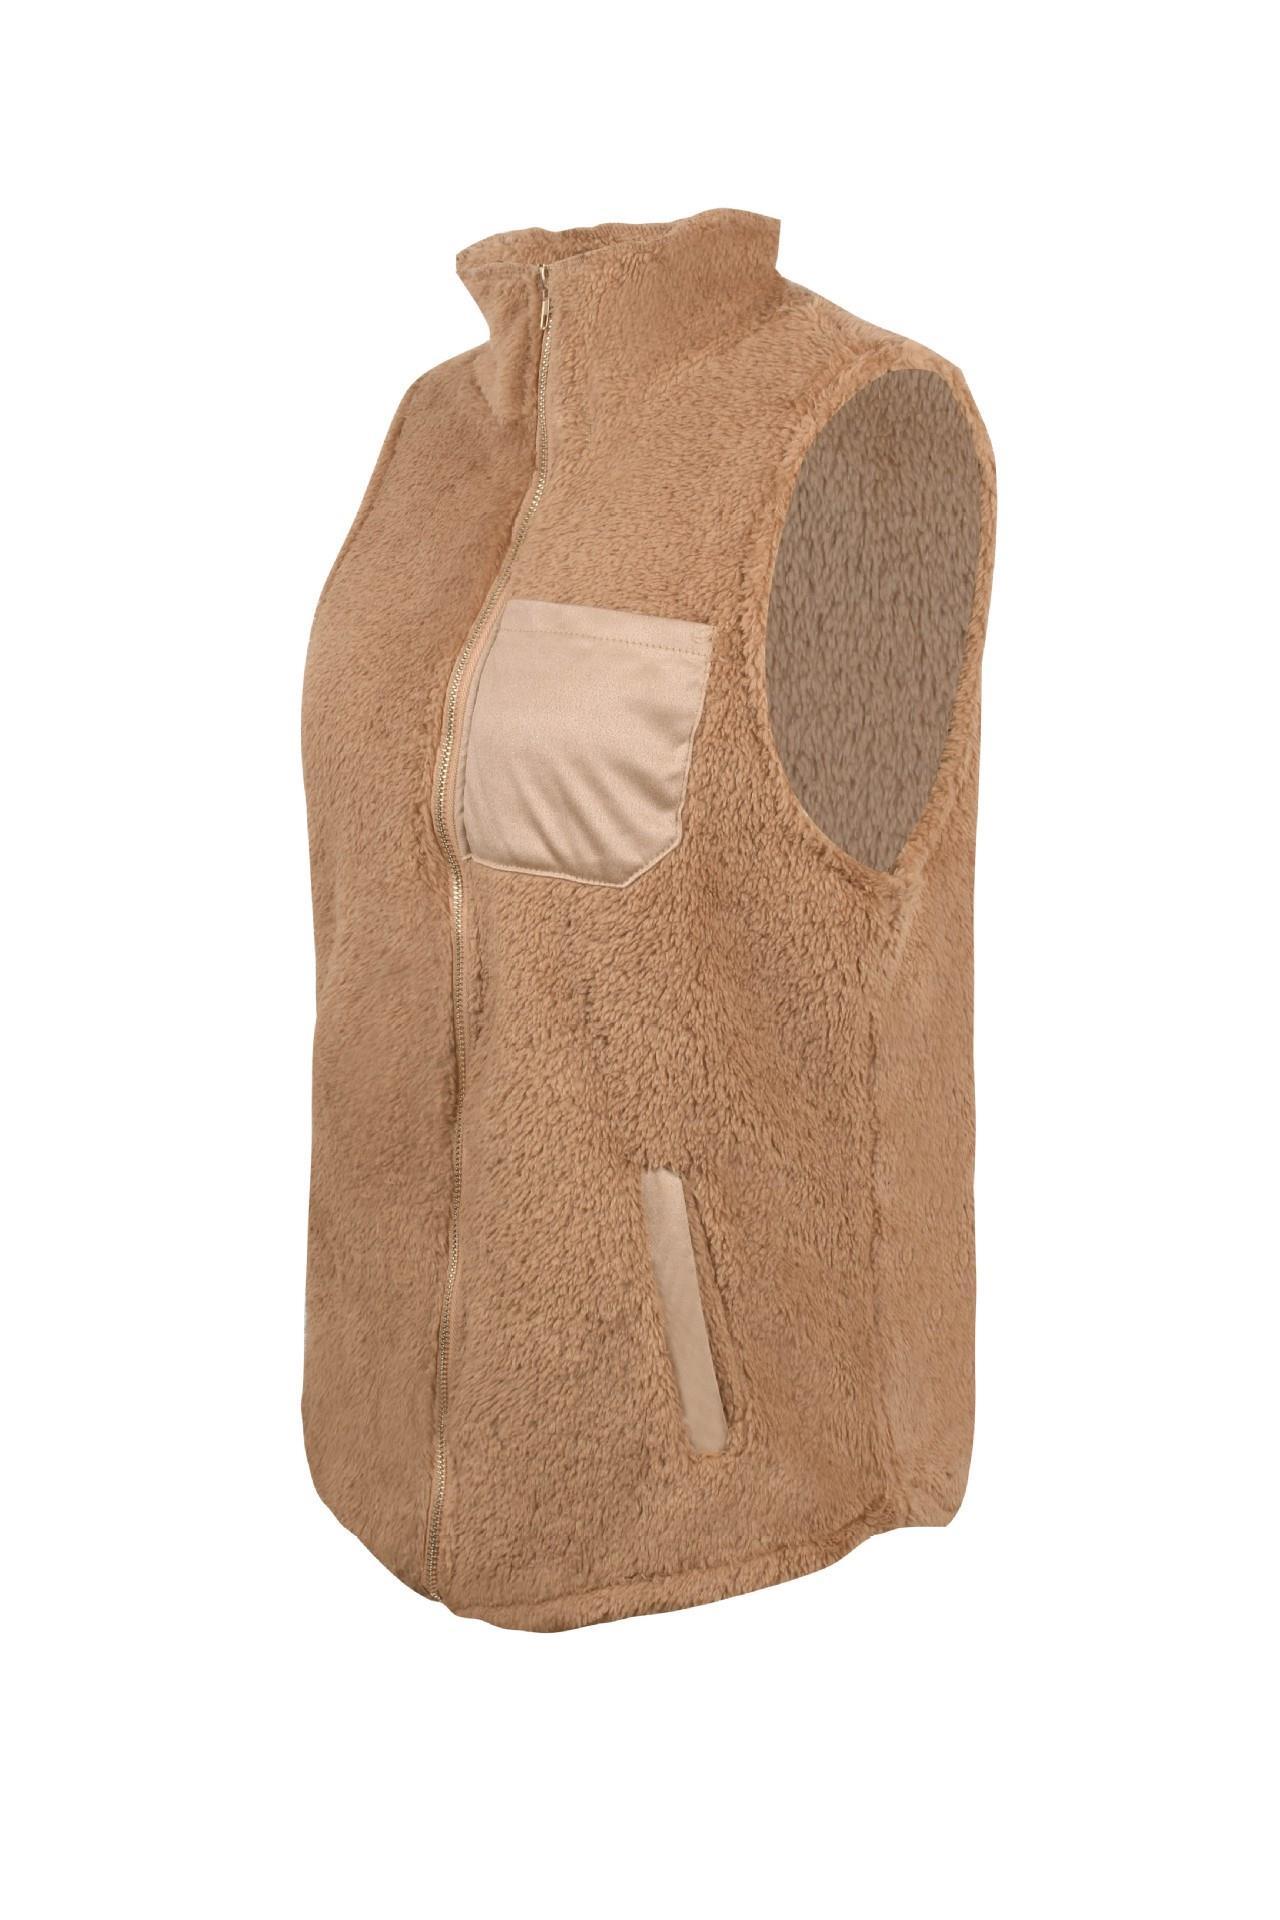 Women's Warm, Plush & Fluffy Fleece Sherpa Vest - Women - Apparel - Outerwear - Vests - clearance - Benn~Burry